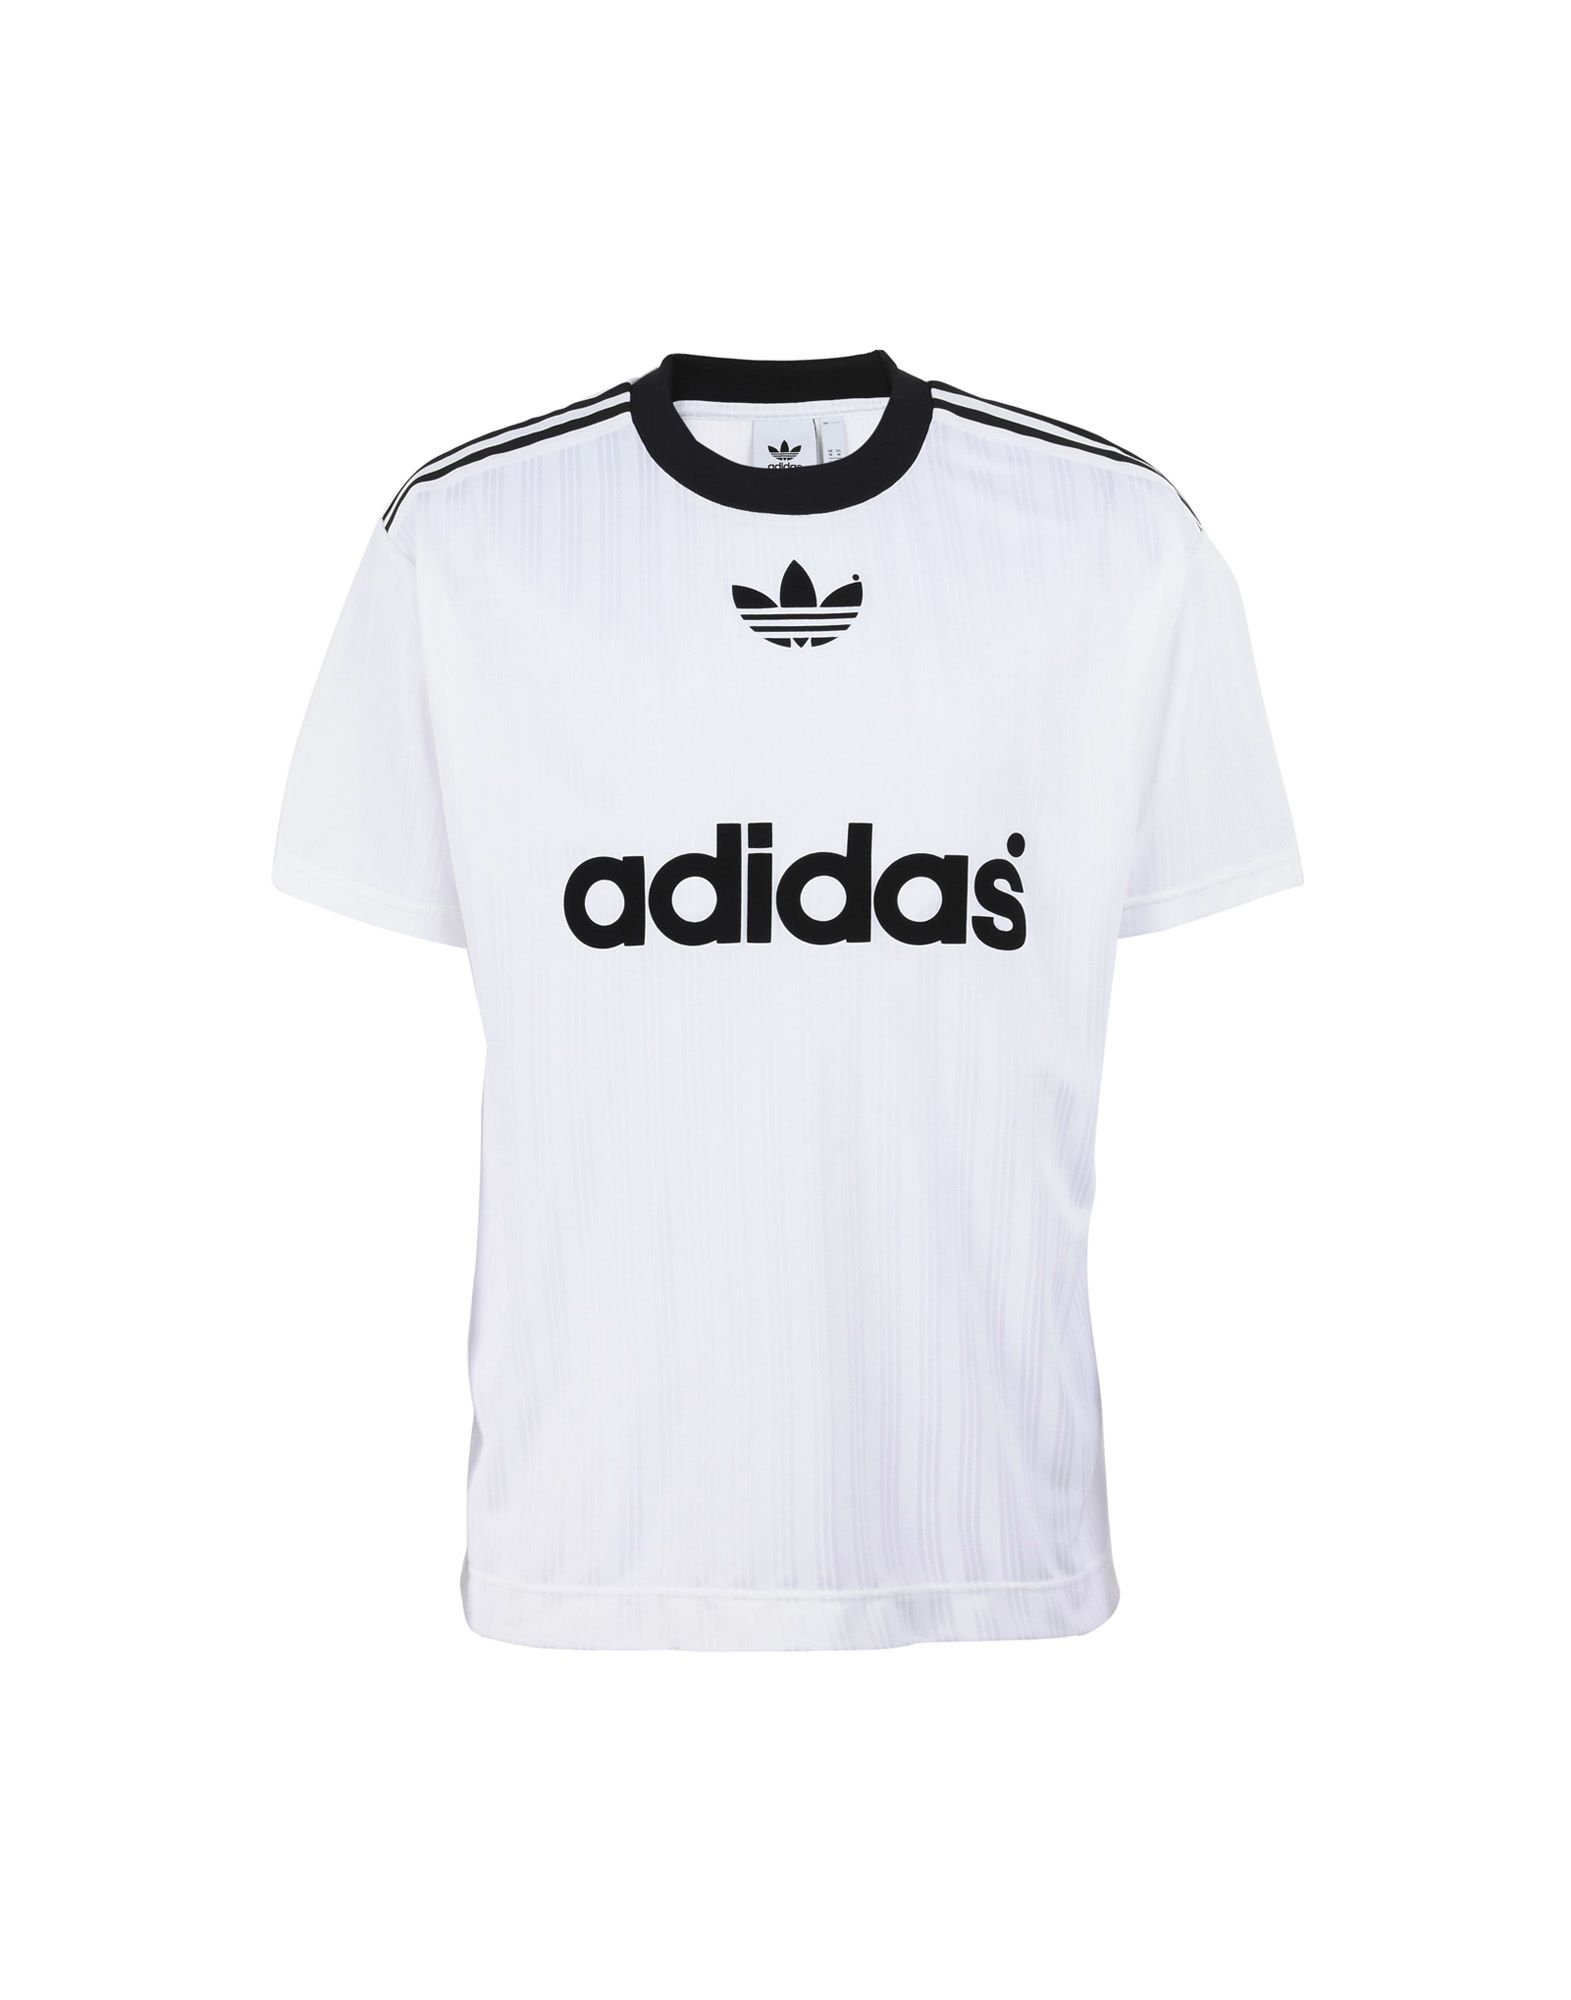 《送料無料》ADIDAS ORIGINALS メンズ T シャツ ホワイト S リサイクルポリエステル 100% Football Shirt